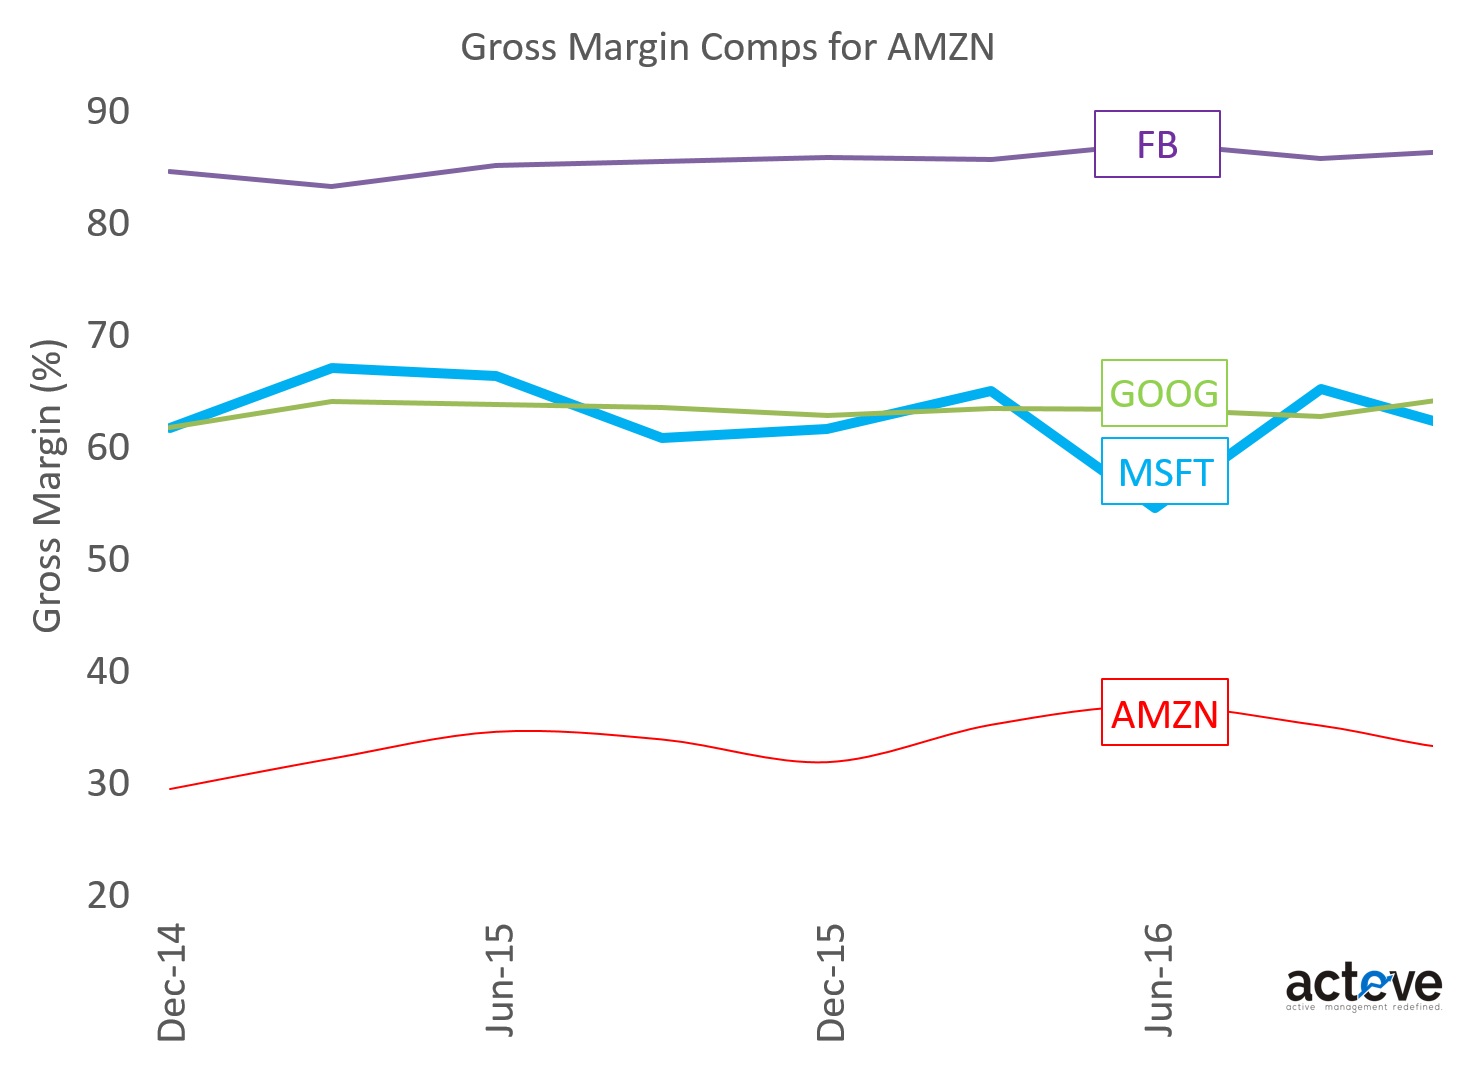 AMZN Gross Margin Comps